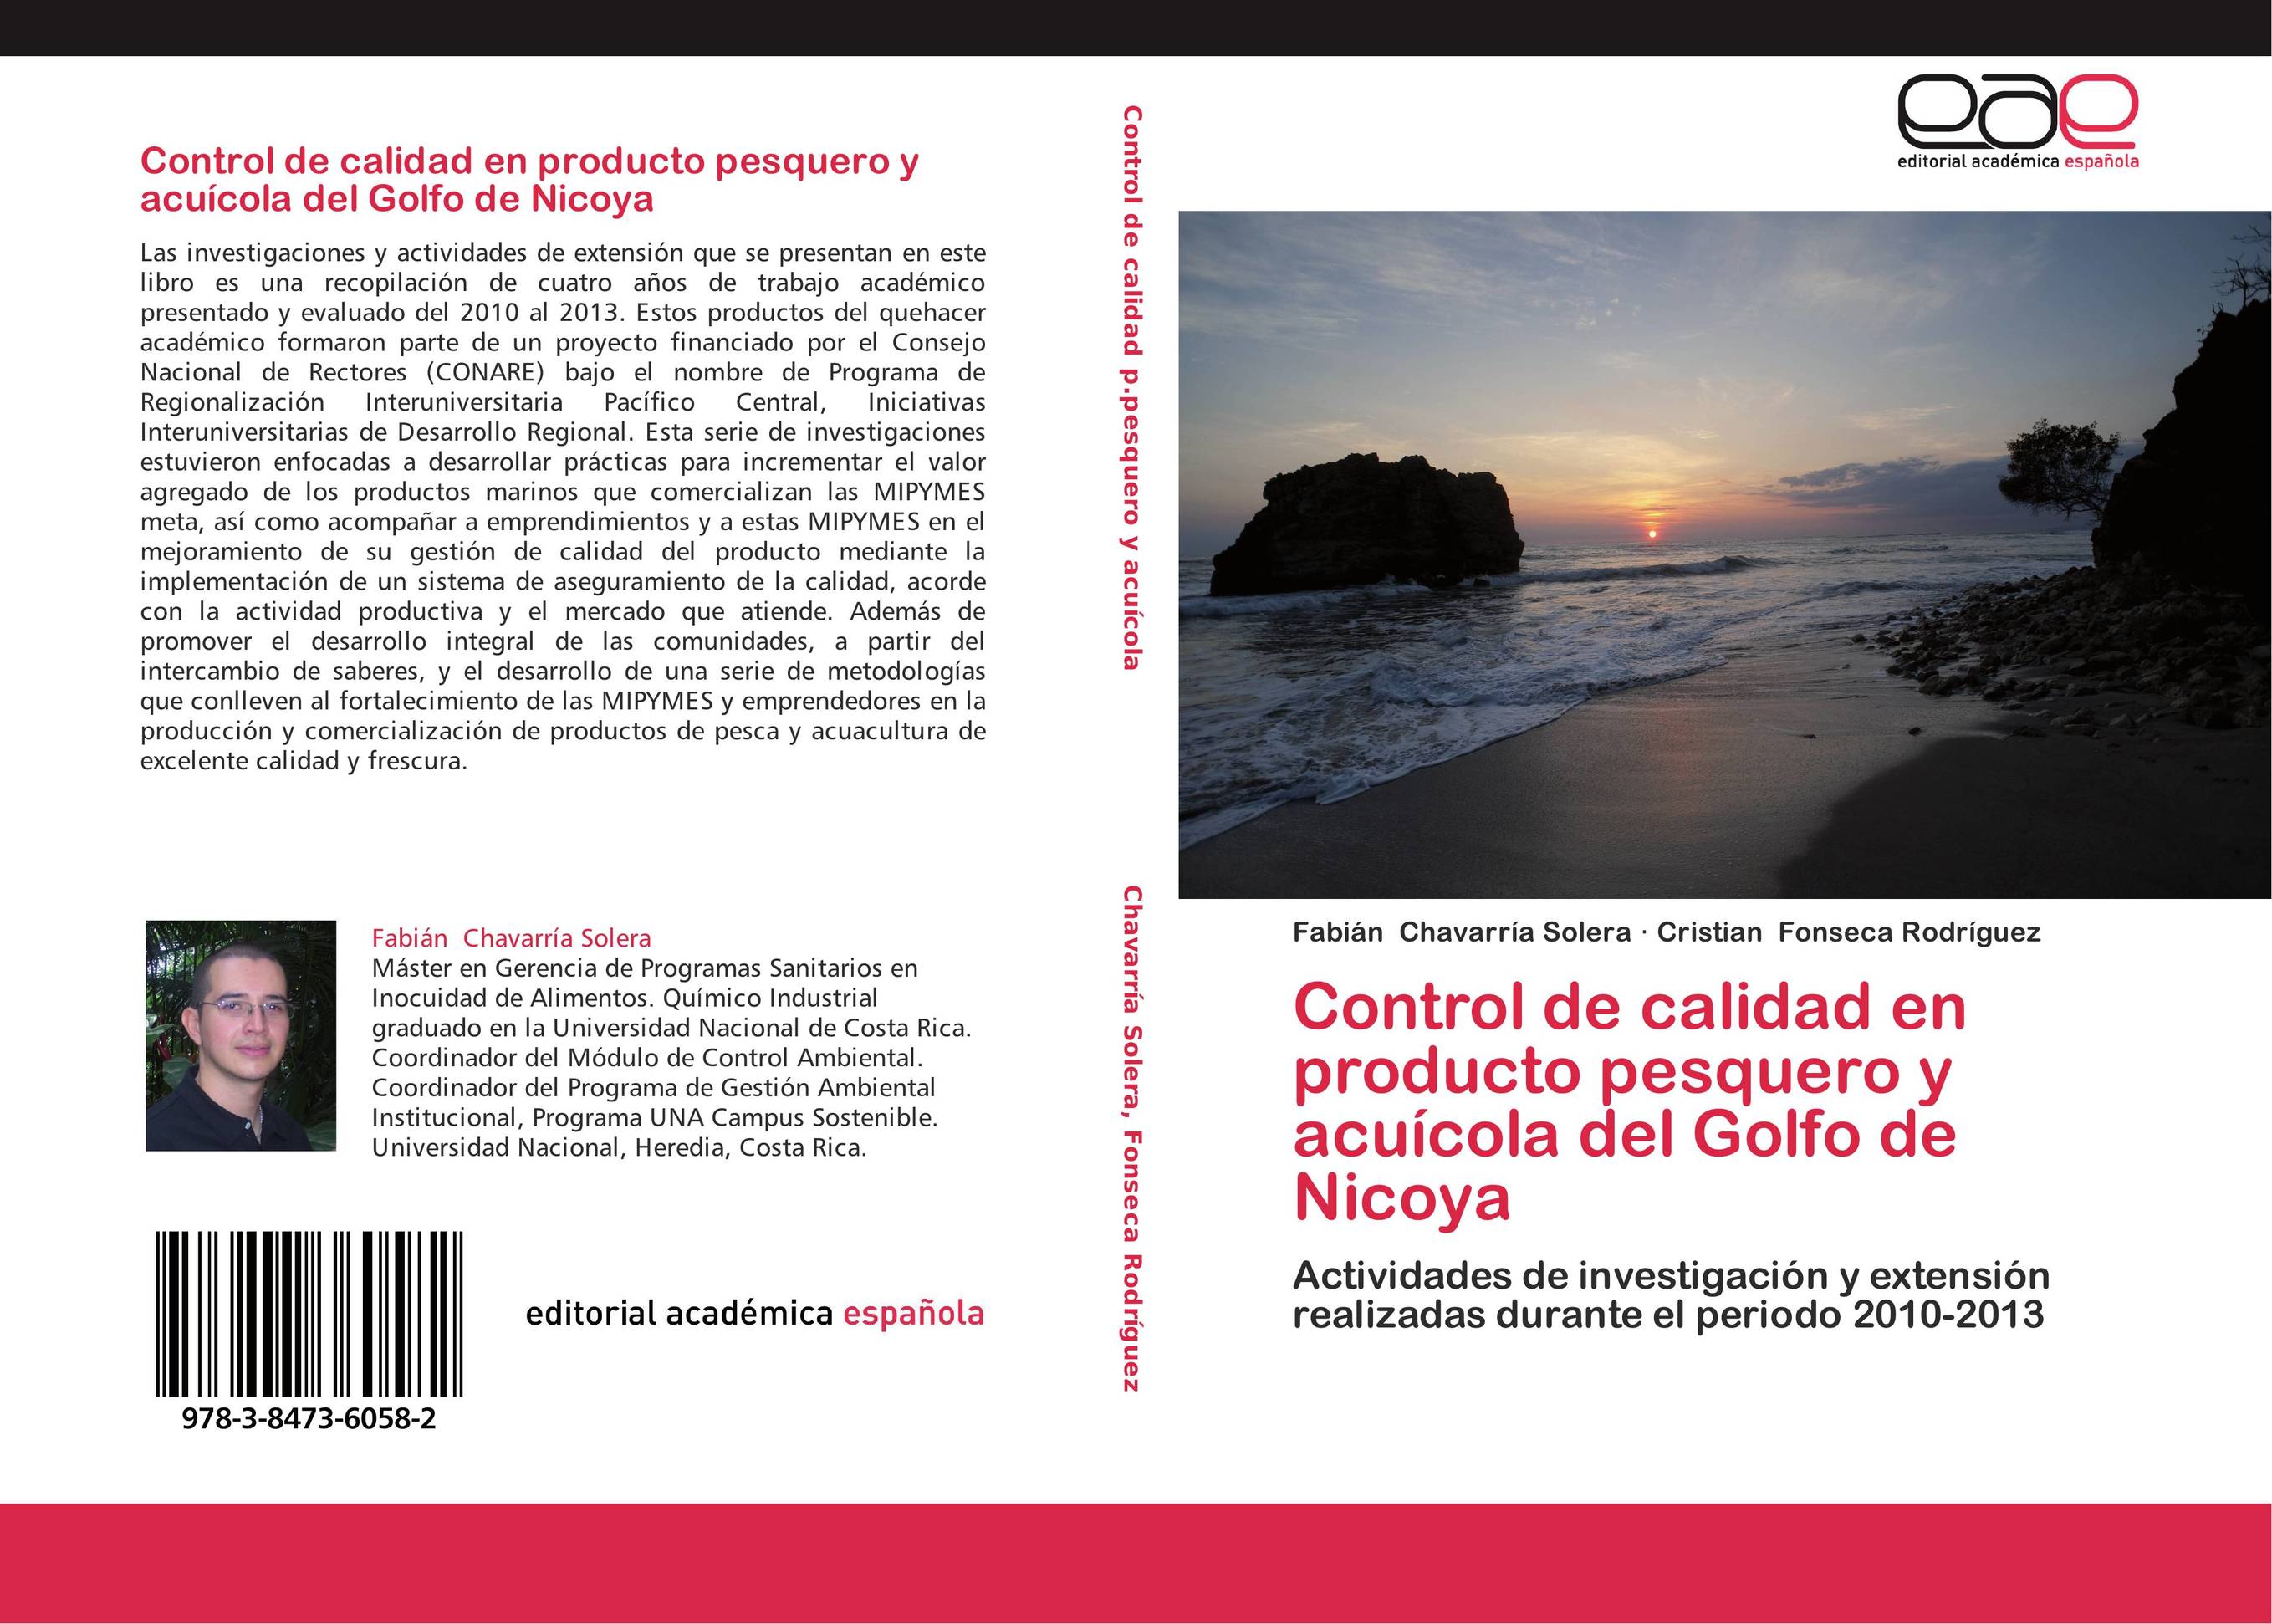 Control de calidad en producto pesquero y acuícola del Golfo de Nicoya